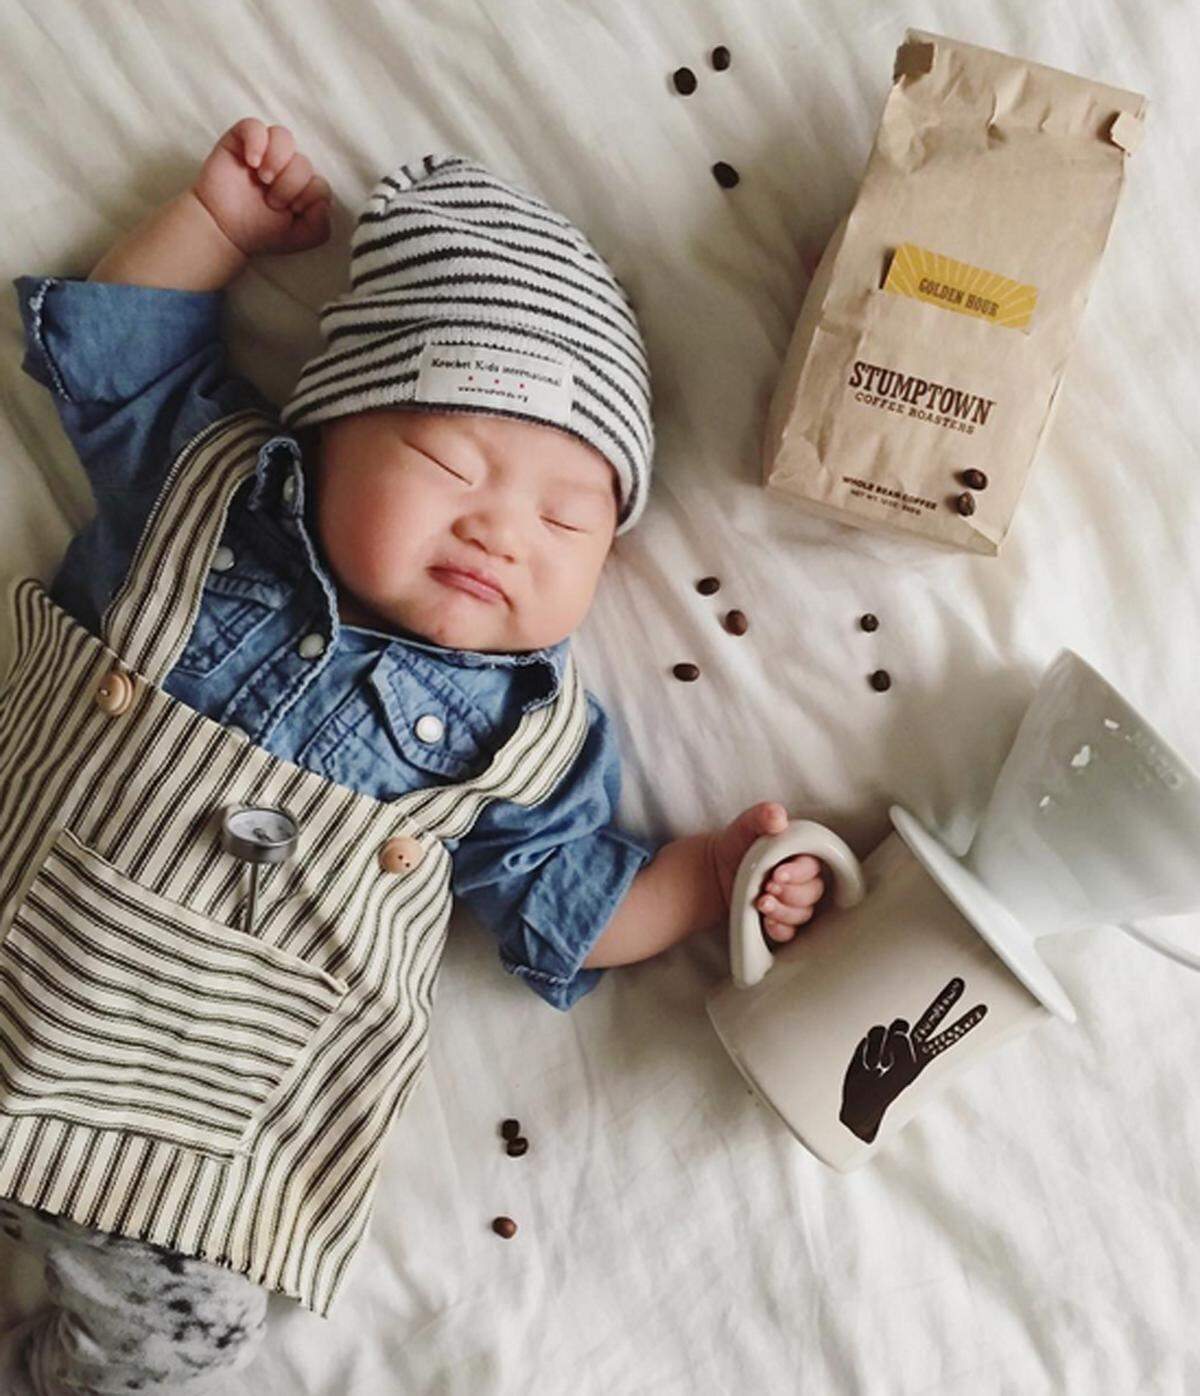 Fotografin Laura Izumikawa nutzt die Mittagsschläfchen ihrer sieben Monate alten Tochter Joey Marie Choi nicht etwa um selbst zu verschnaufen, sondern um Fotos der etwas anderen Art zu schießen.